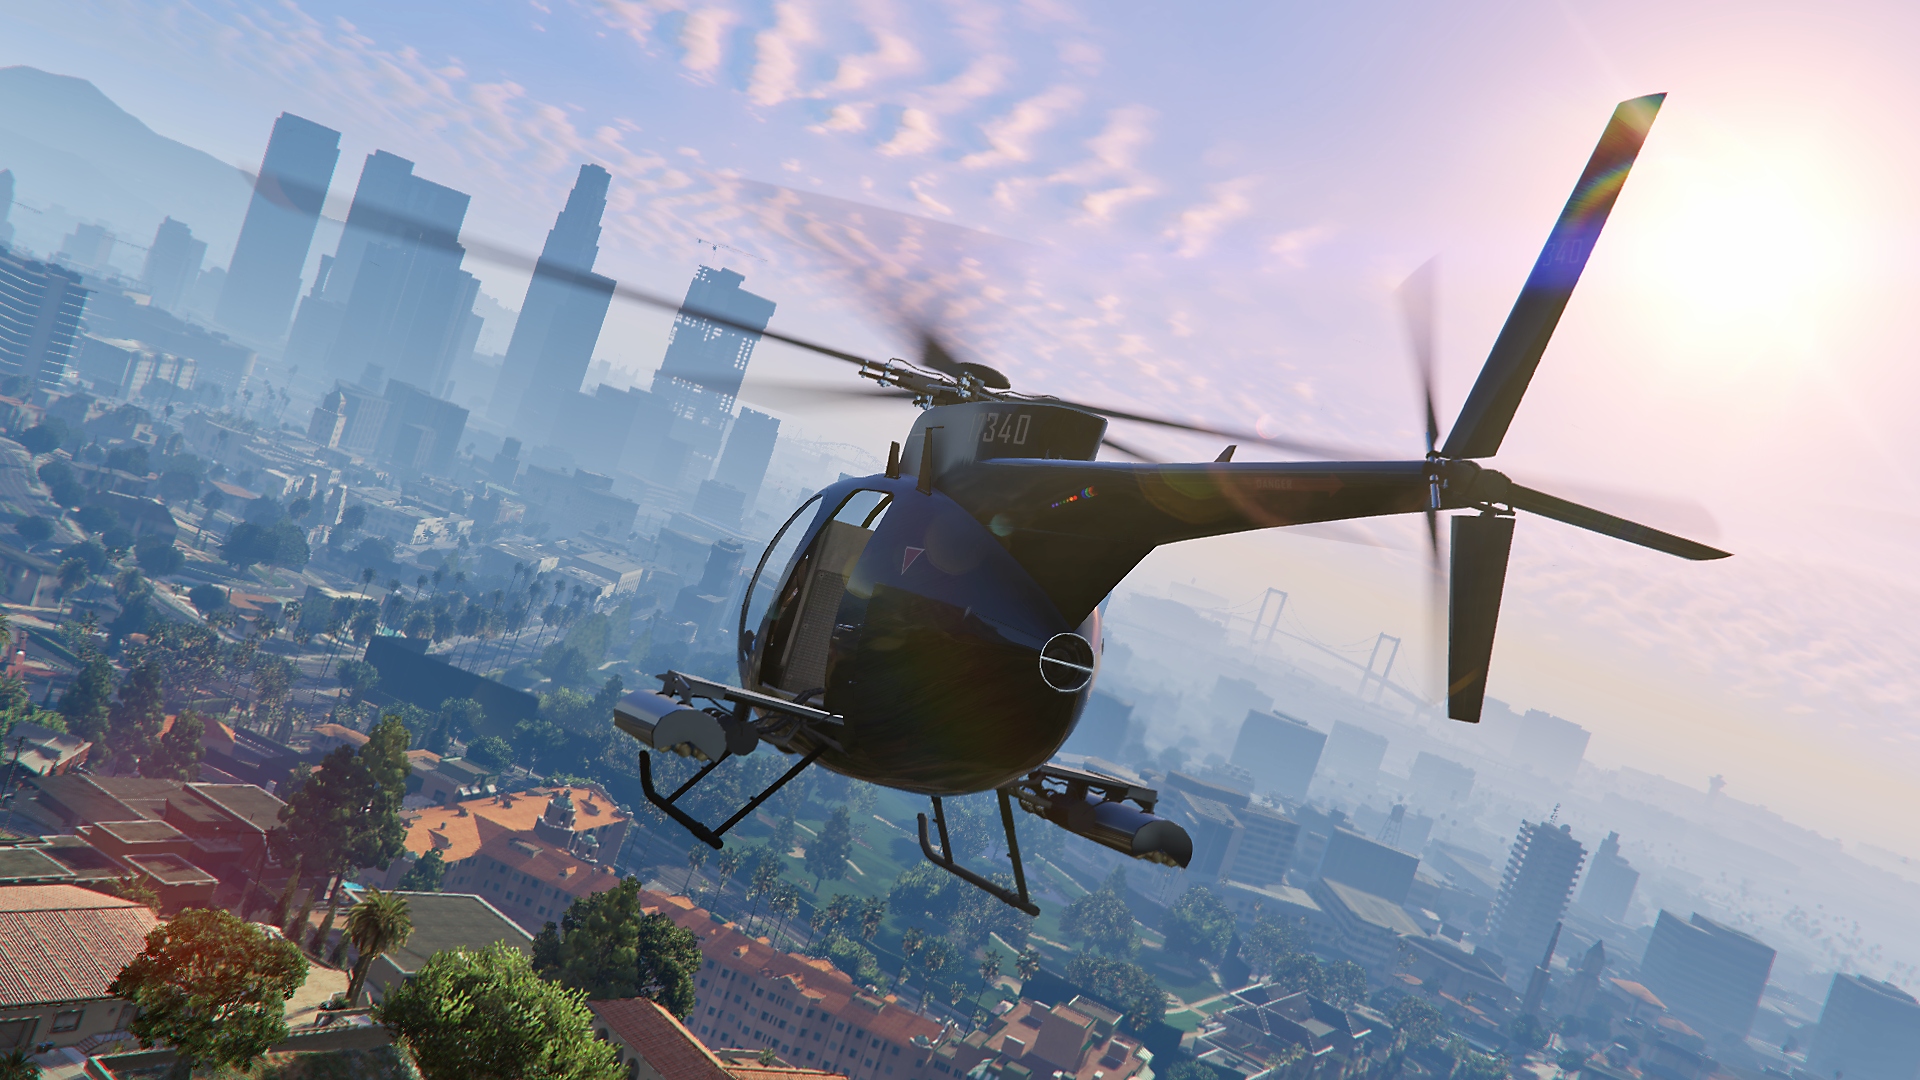 Grand Theft Auto V – zrzut ekranu przedstawiający śmigłowiec lecący ku miejskiemu krajobrazowi w oddali